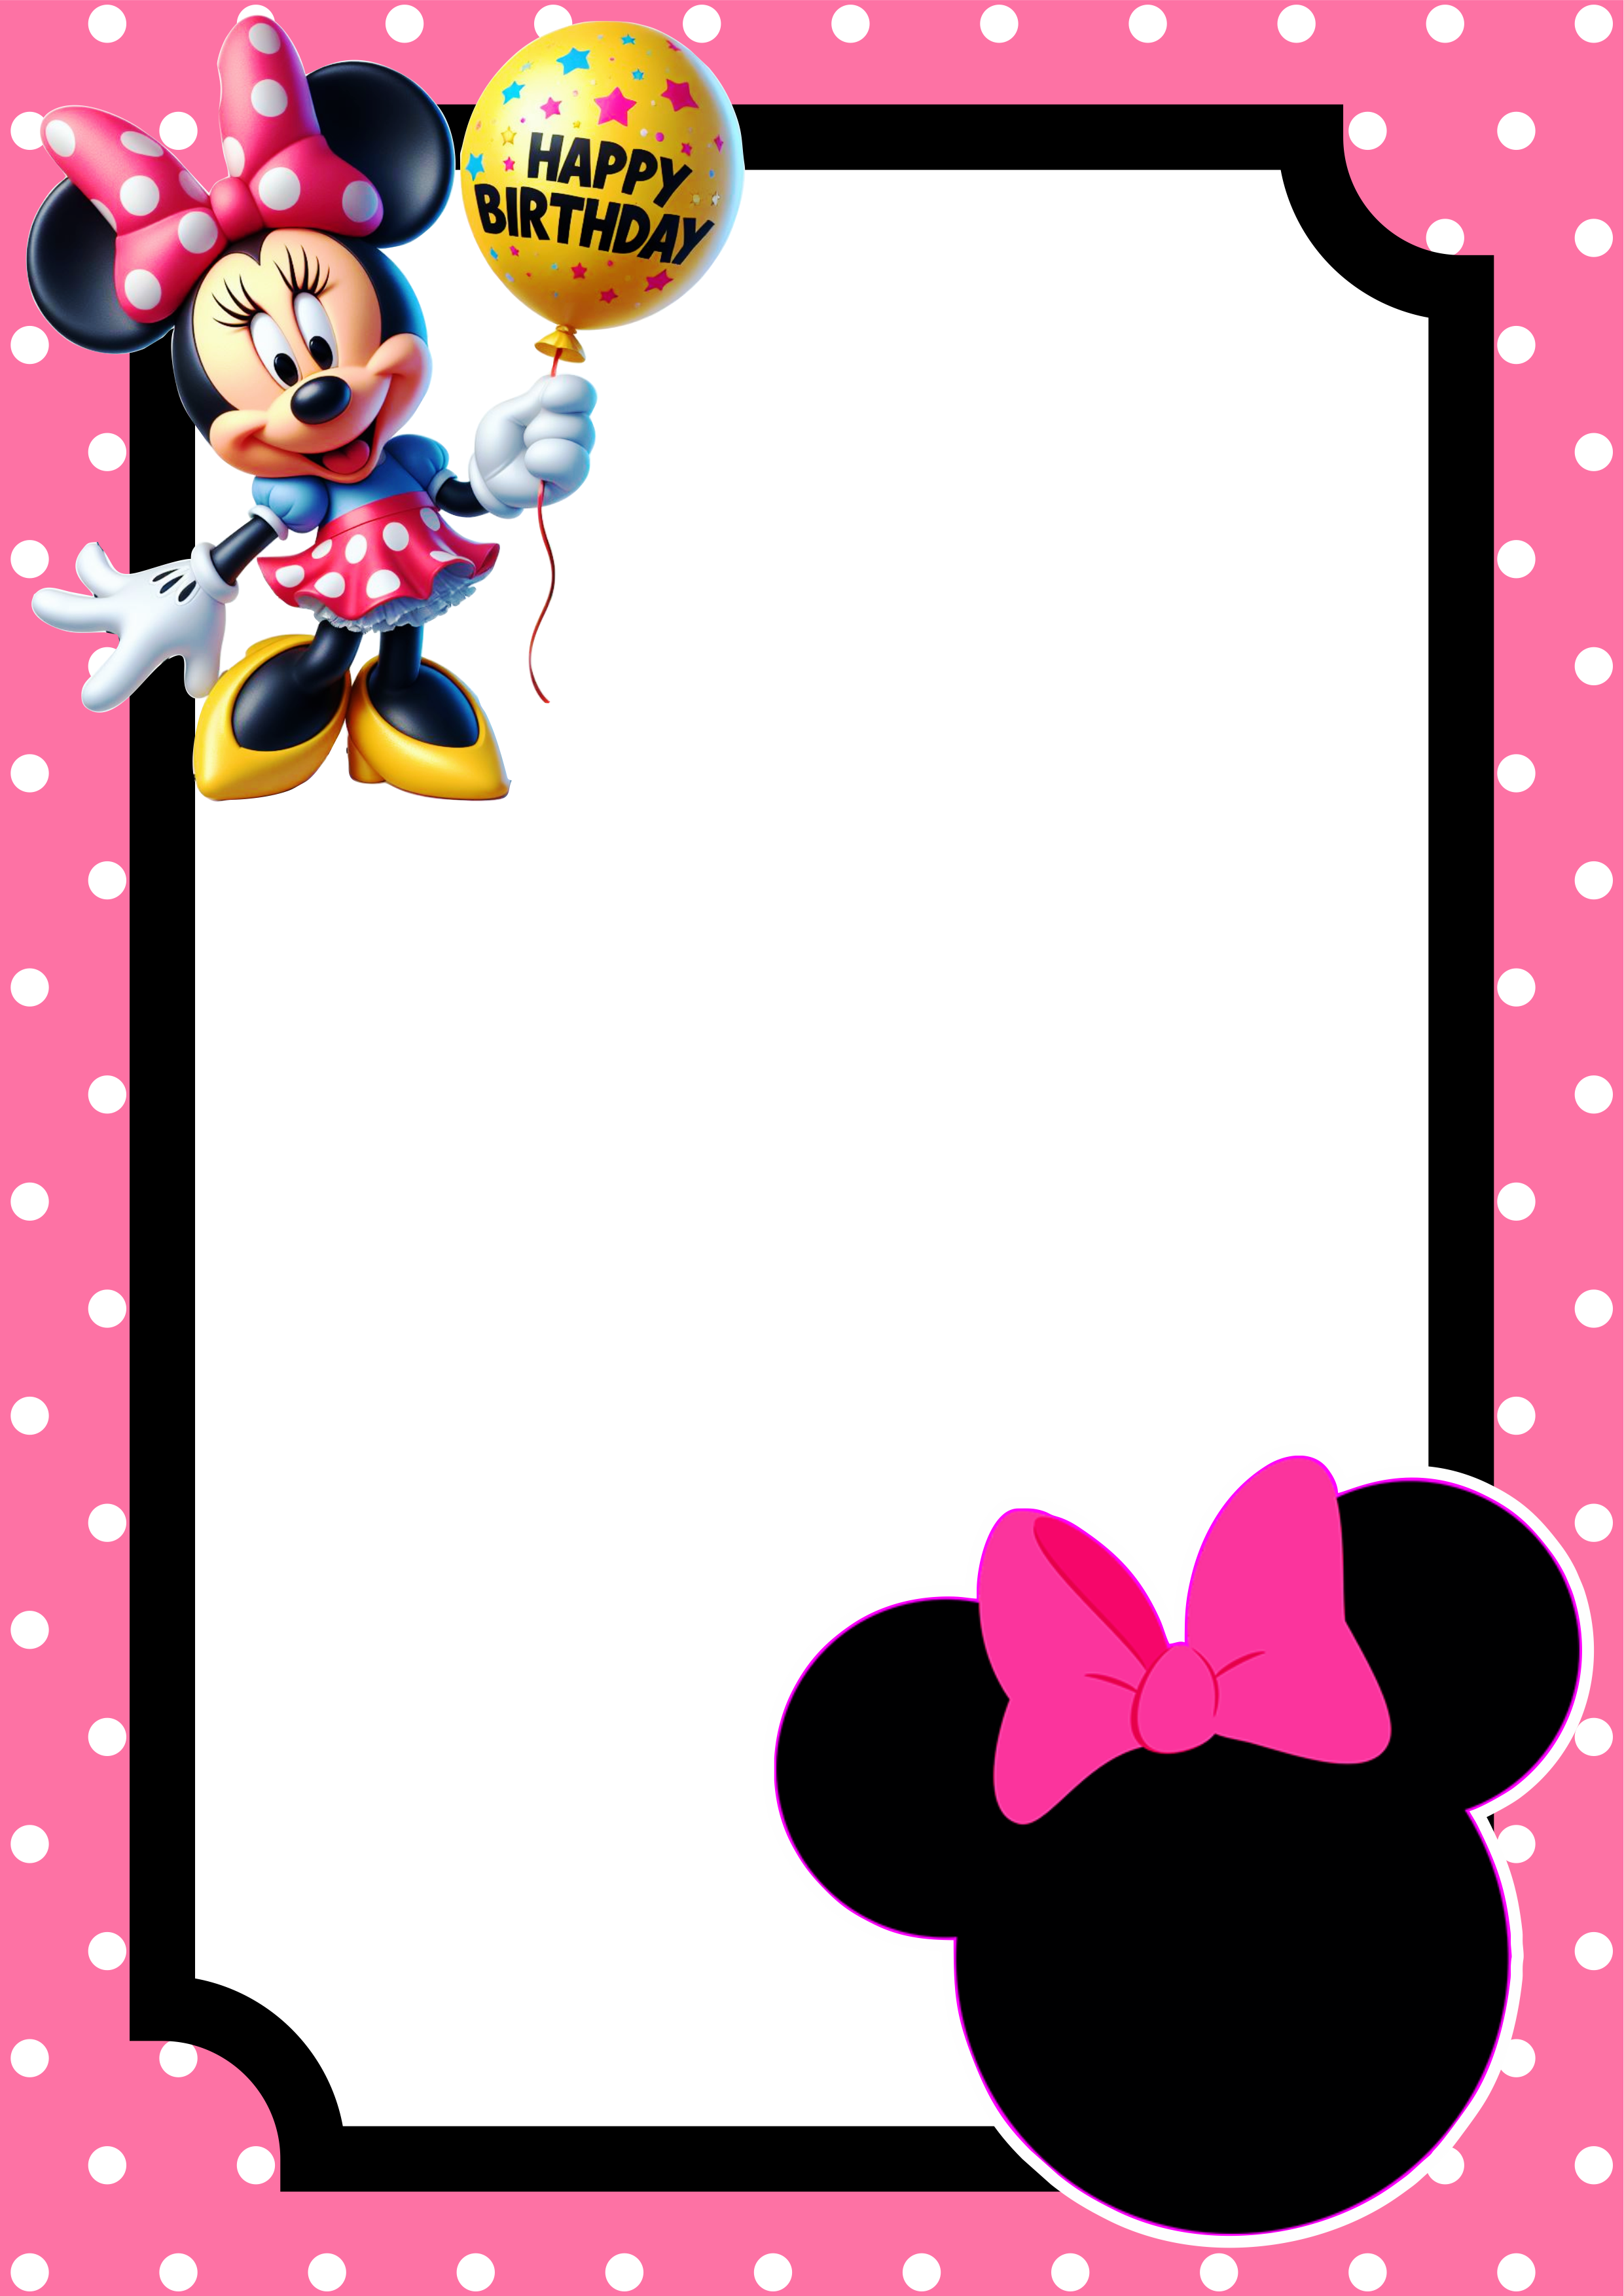 Convite virtual Minnie rosa molde pronto para editar e imprimir festa aniversário infantil Disney renda extra com personalizados artes png